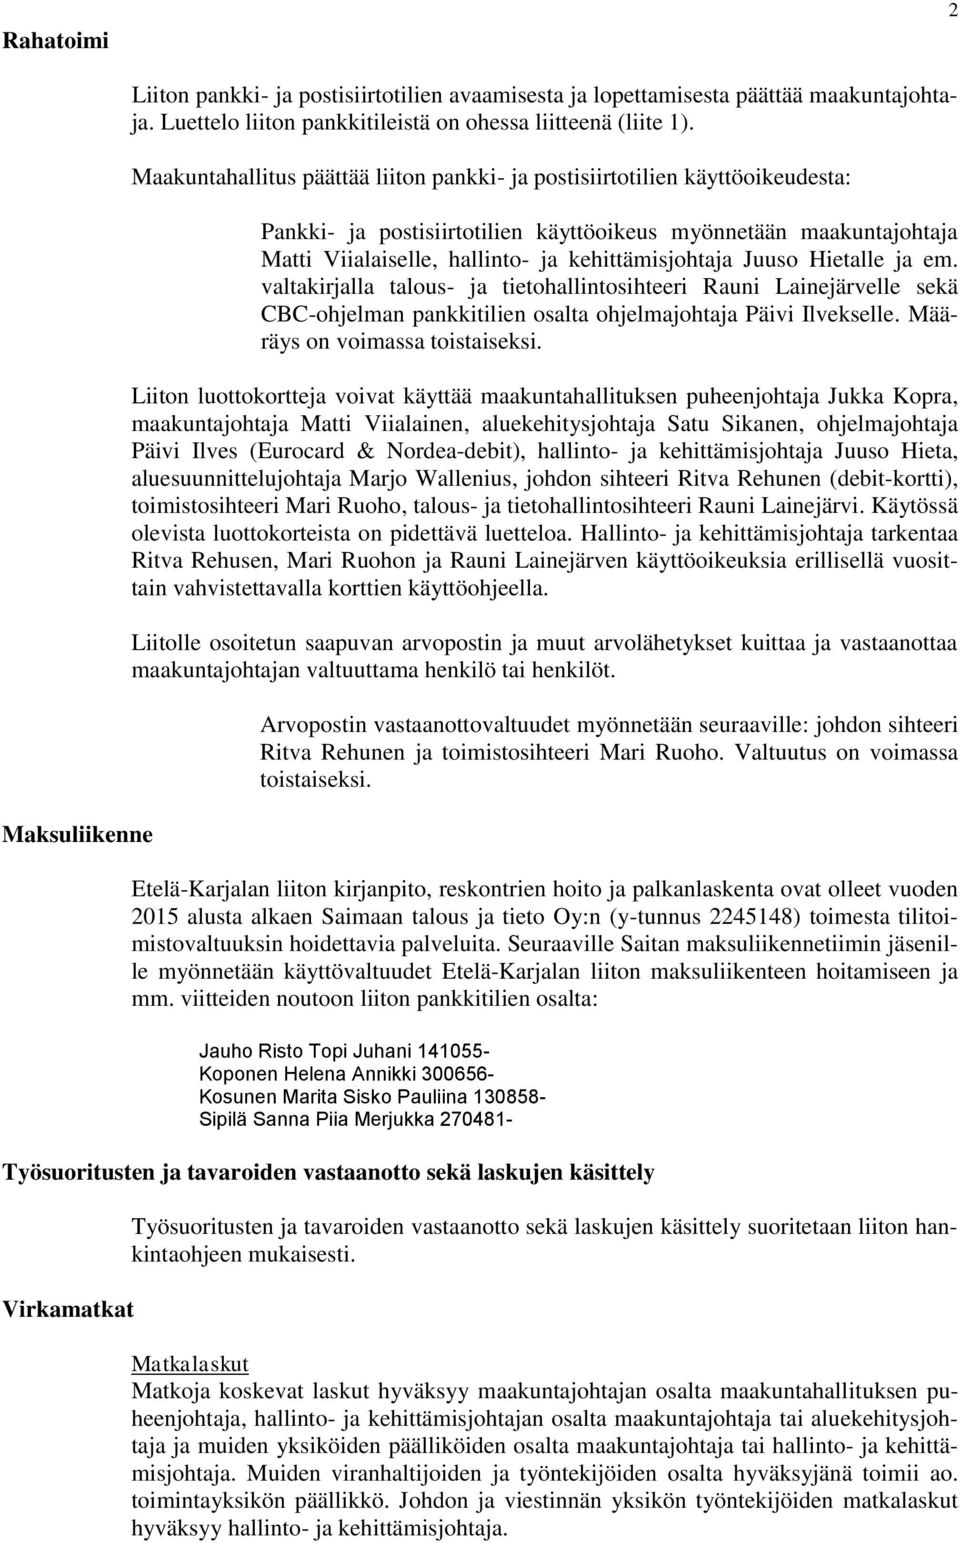 Juuso Hietalle ja em. valtakirjalla talous- ja tietohallintosihteeri Rauni Lainejärvelle sekä CBC-ohjelman pankkitilien osalta ohjelmajohtaja Päivi Ilvekselle. Määräys on voimassa toistaiseksi.